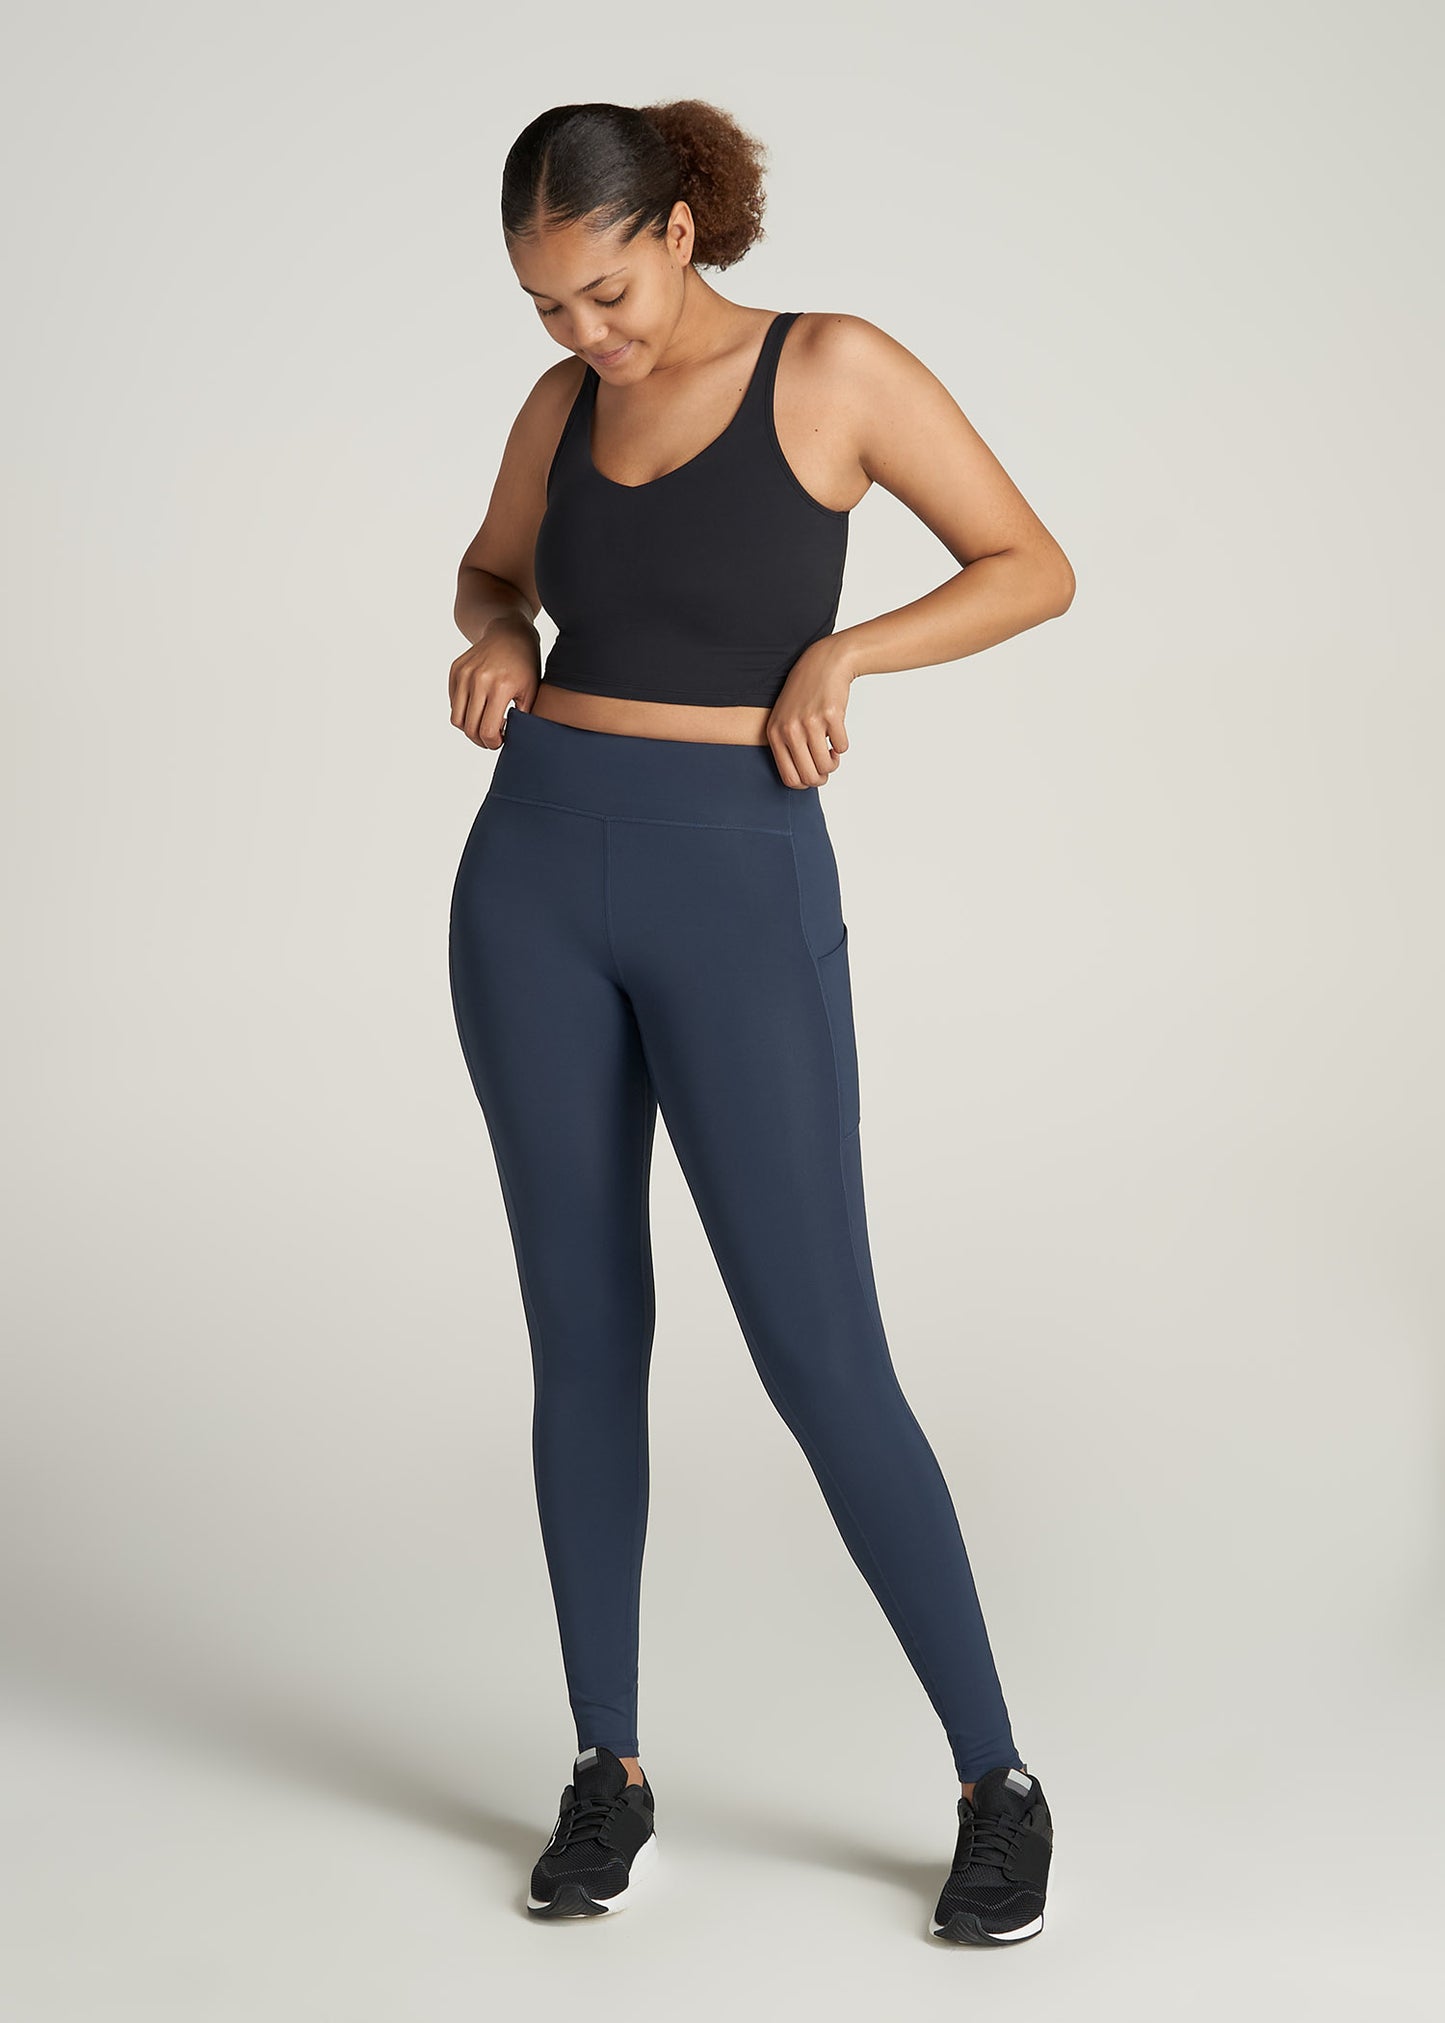 Kmart Active Womens Full Length Core Leggings-Navy Size: 8